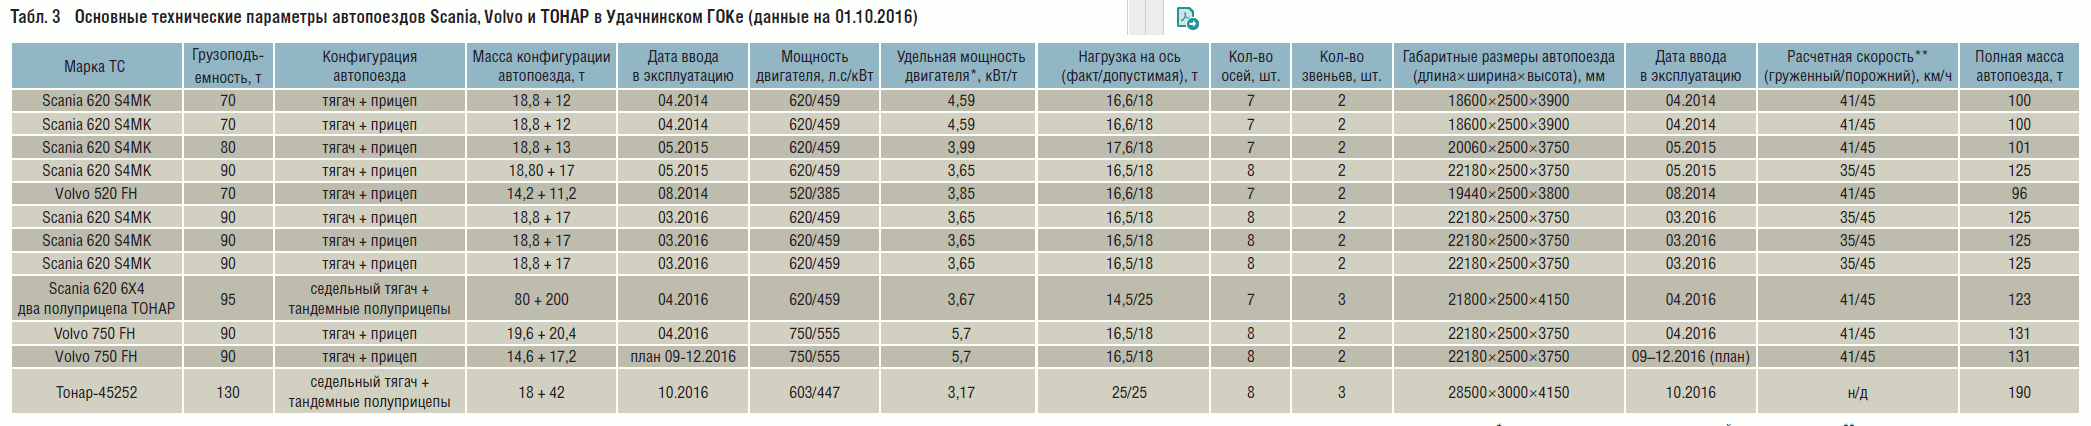 Табл. 3 Основные технические параметры автопоездов Scania, Volvo и ТОНАР в Удачнинском ГОКе (данные на 01.10.2016)